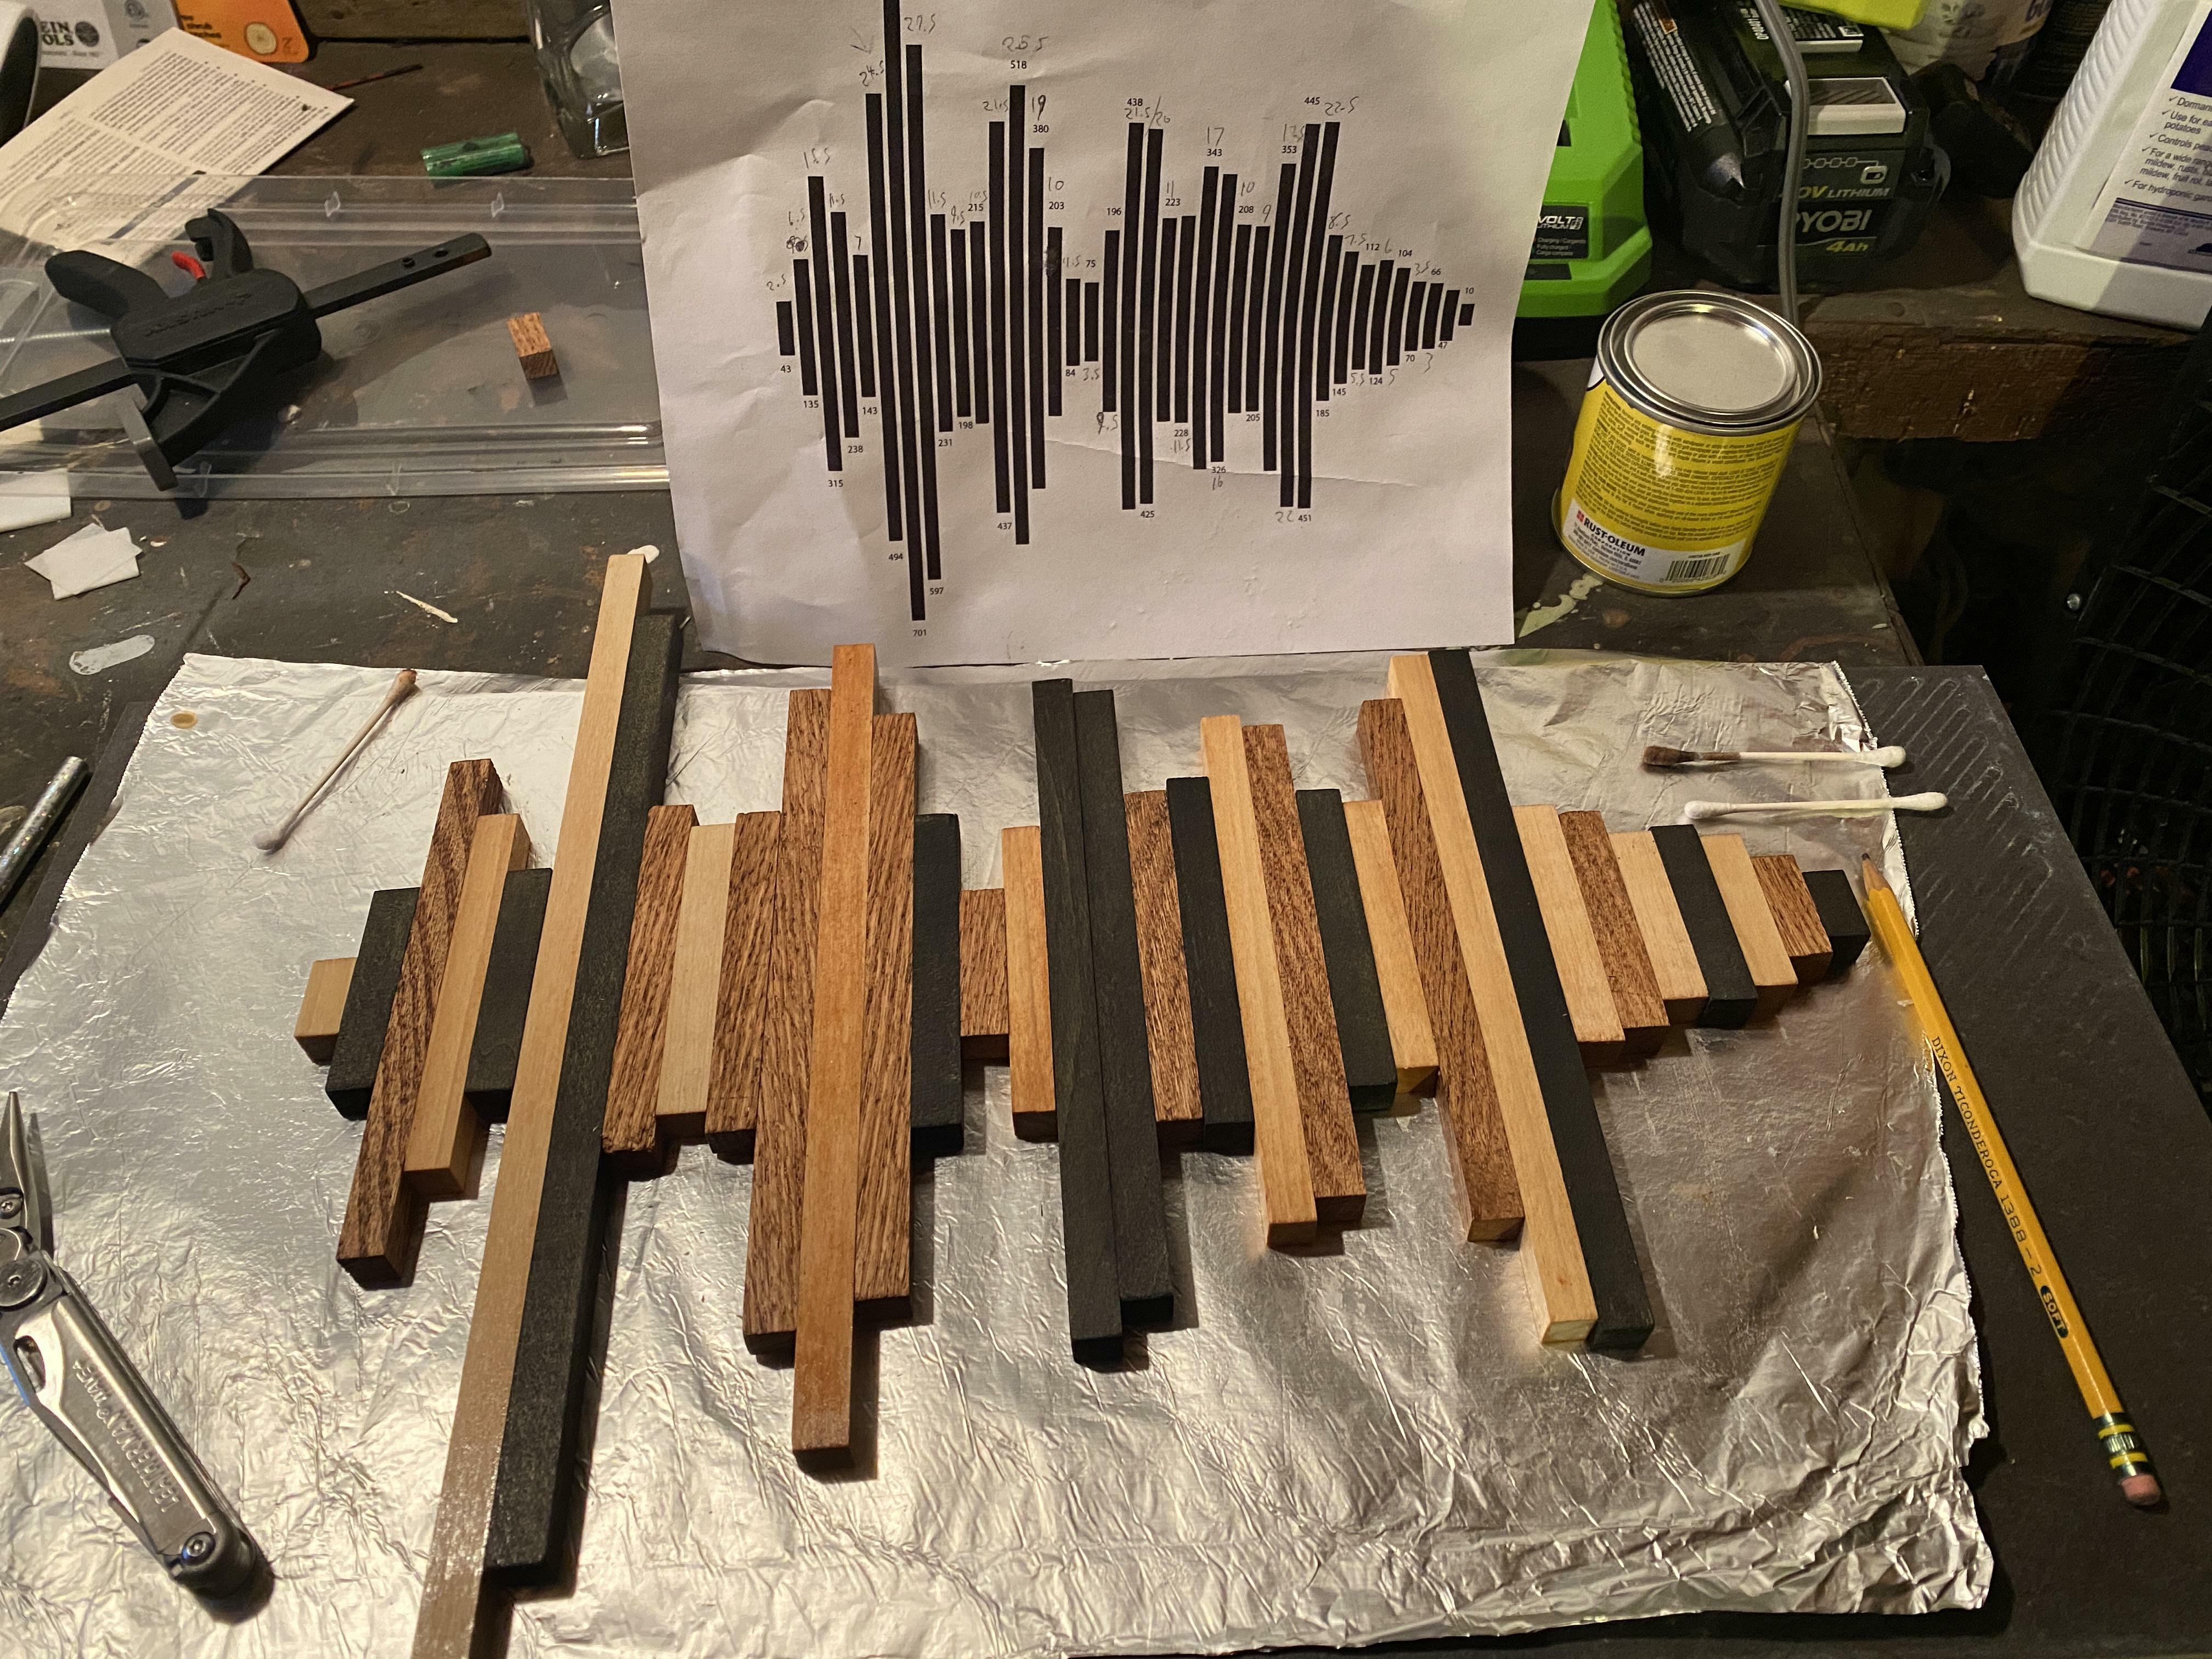 forme d'onde en bois fait ceci comme cadeau d'anniversaire pour ma femme c'est à partir de l'audio de nos vœux